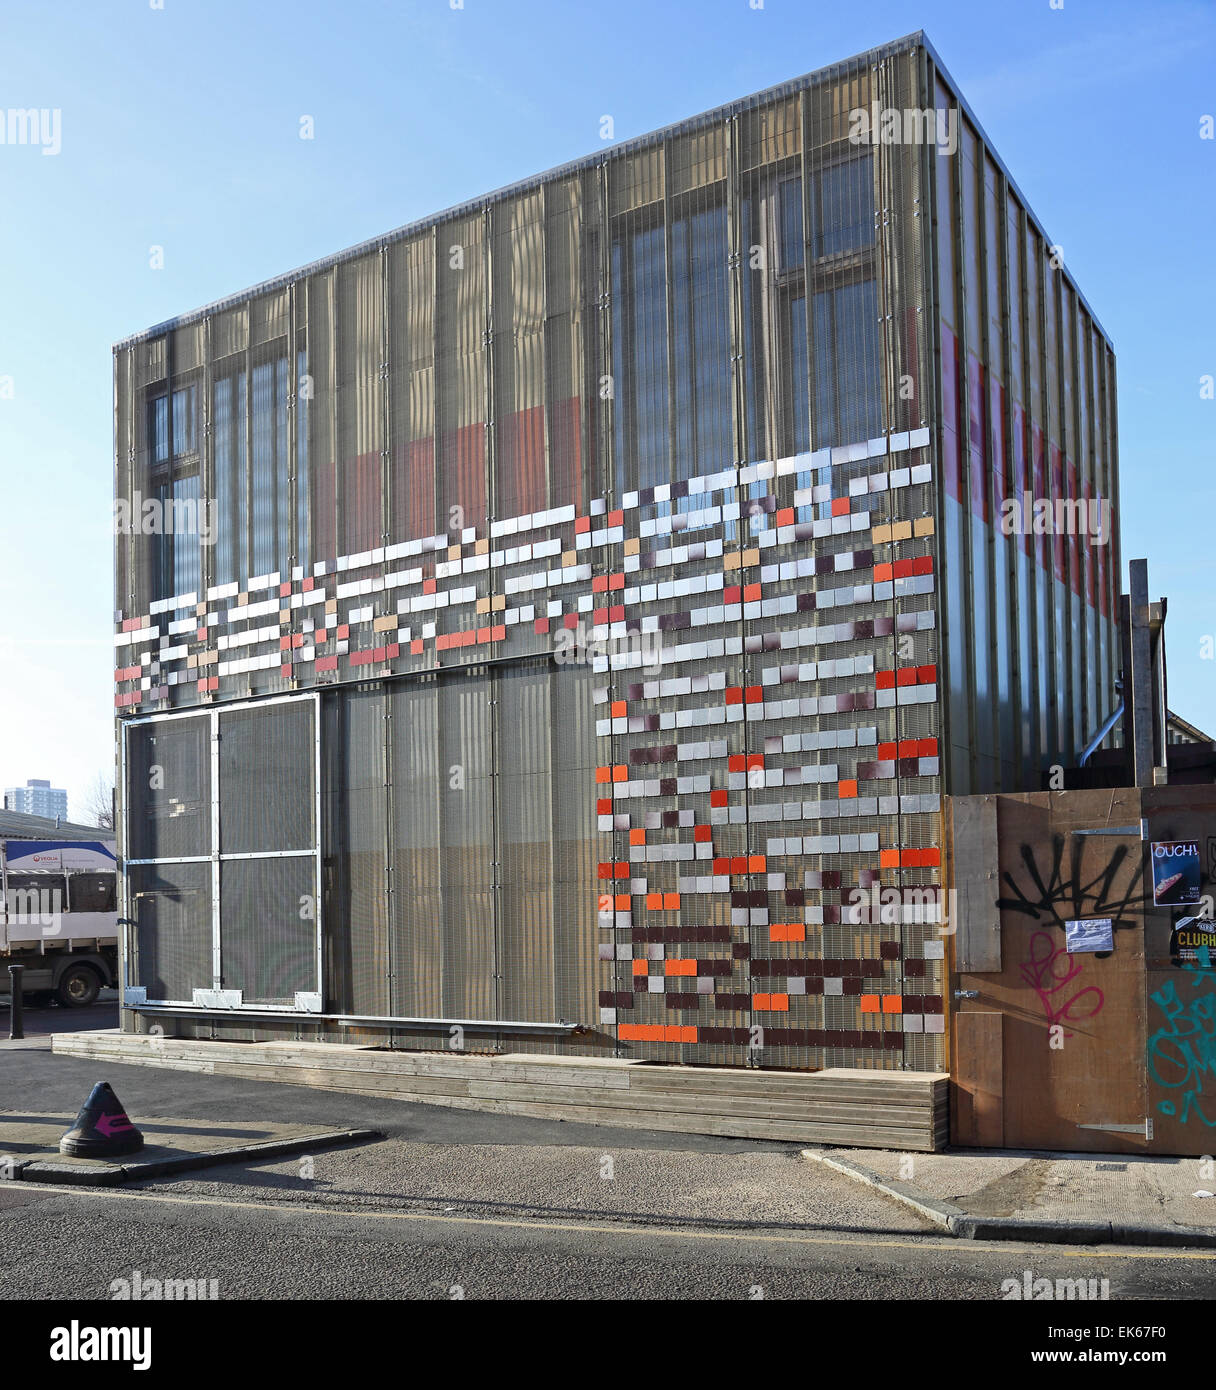 Hub 67, un espace communautaire dans la région de Hackney Wick construit à partir de matériaux recyclés à partir de mai 2012 site olympique de Londres Banque D'Images